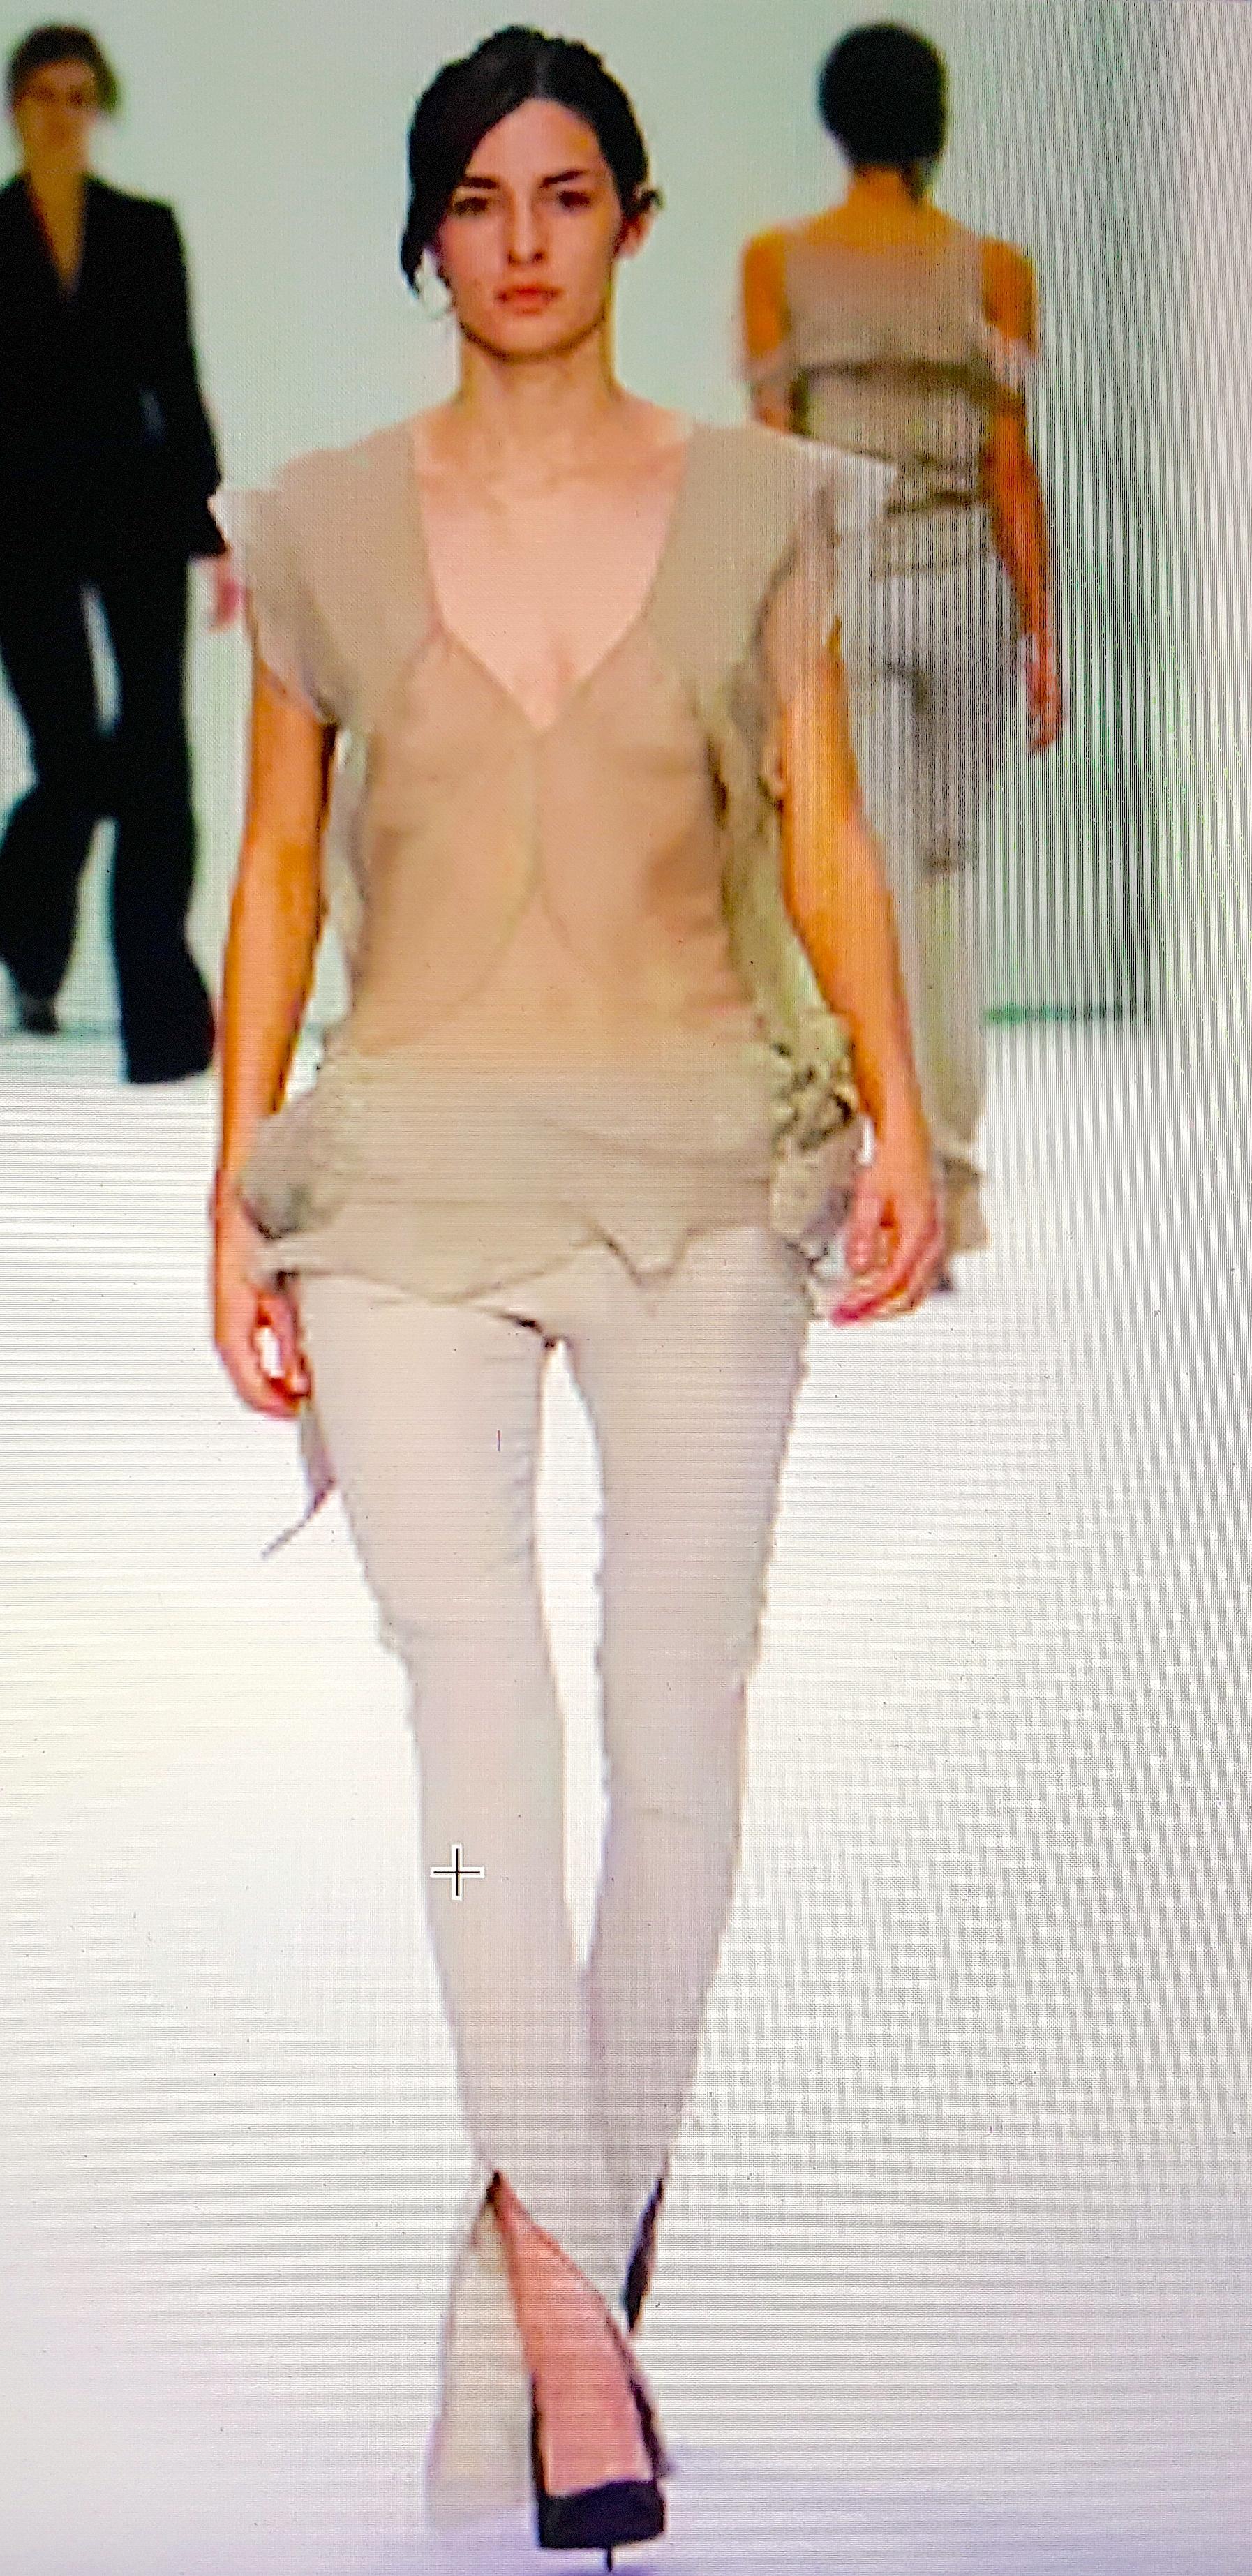 Pour son défilé final de l'automne-hiver 2002, Stella McCartney a présenté ce style éthéré unique de blouse en georgette de soie transparente, semblable à de la lingerie, dans le 